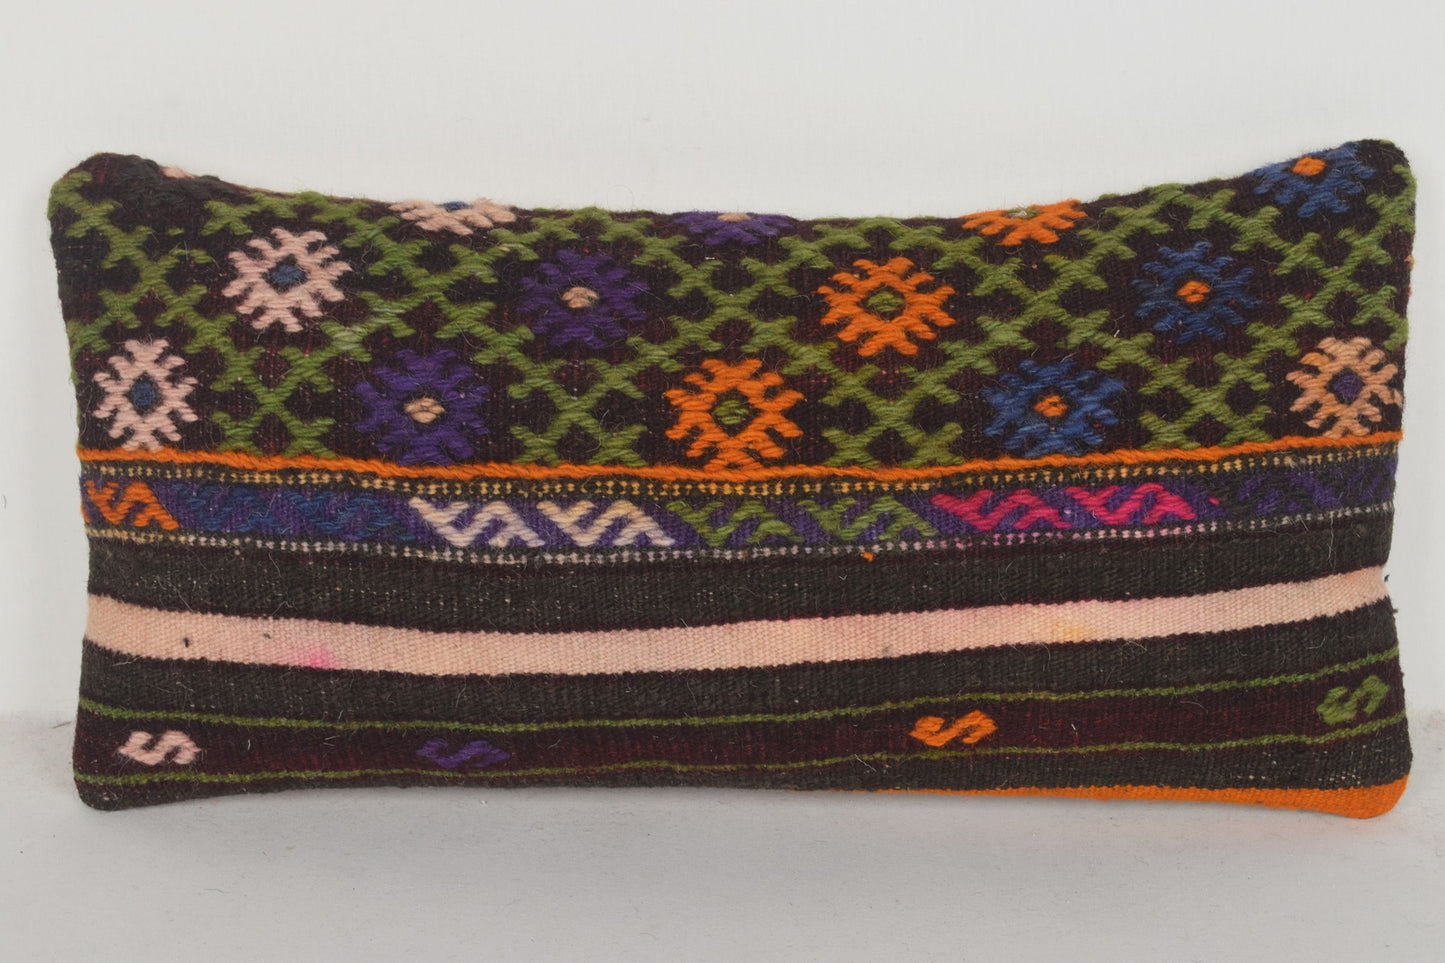 Turkish Outdoor Cushion G00561 Wall Covering Woollen Handwork Cotton Case